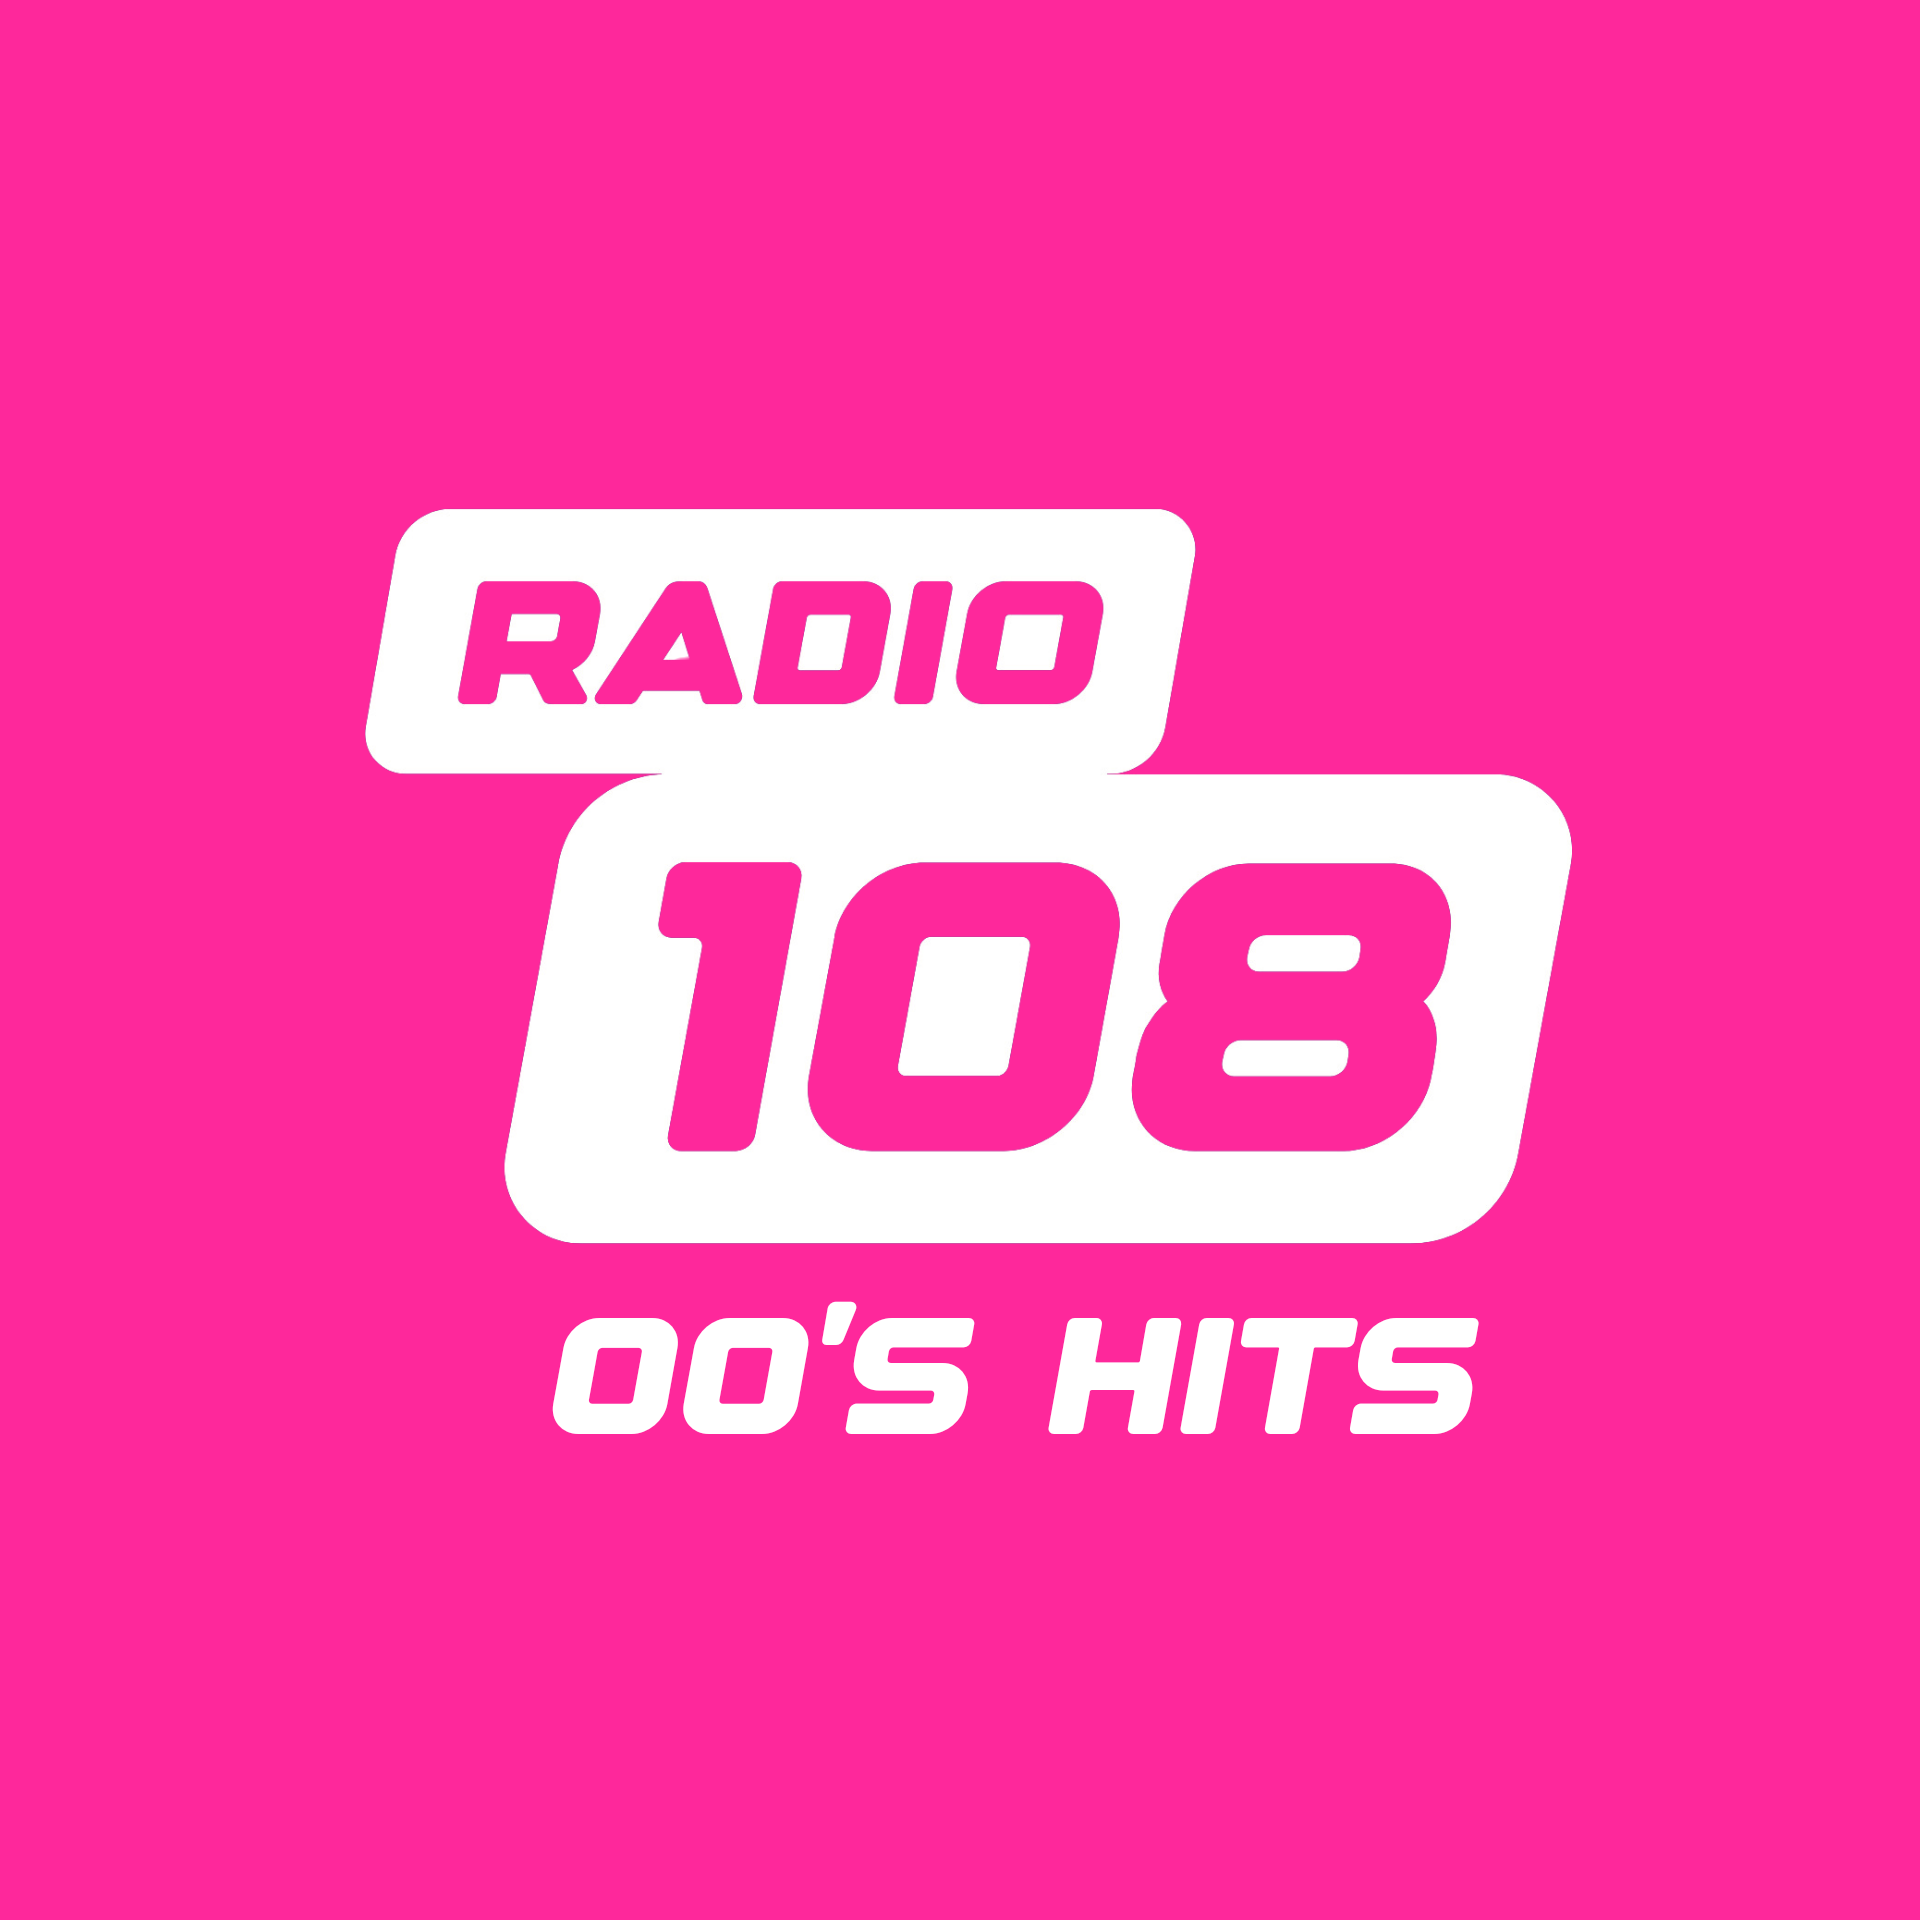 RADIO 108 - 00'S HITS